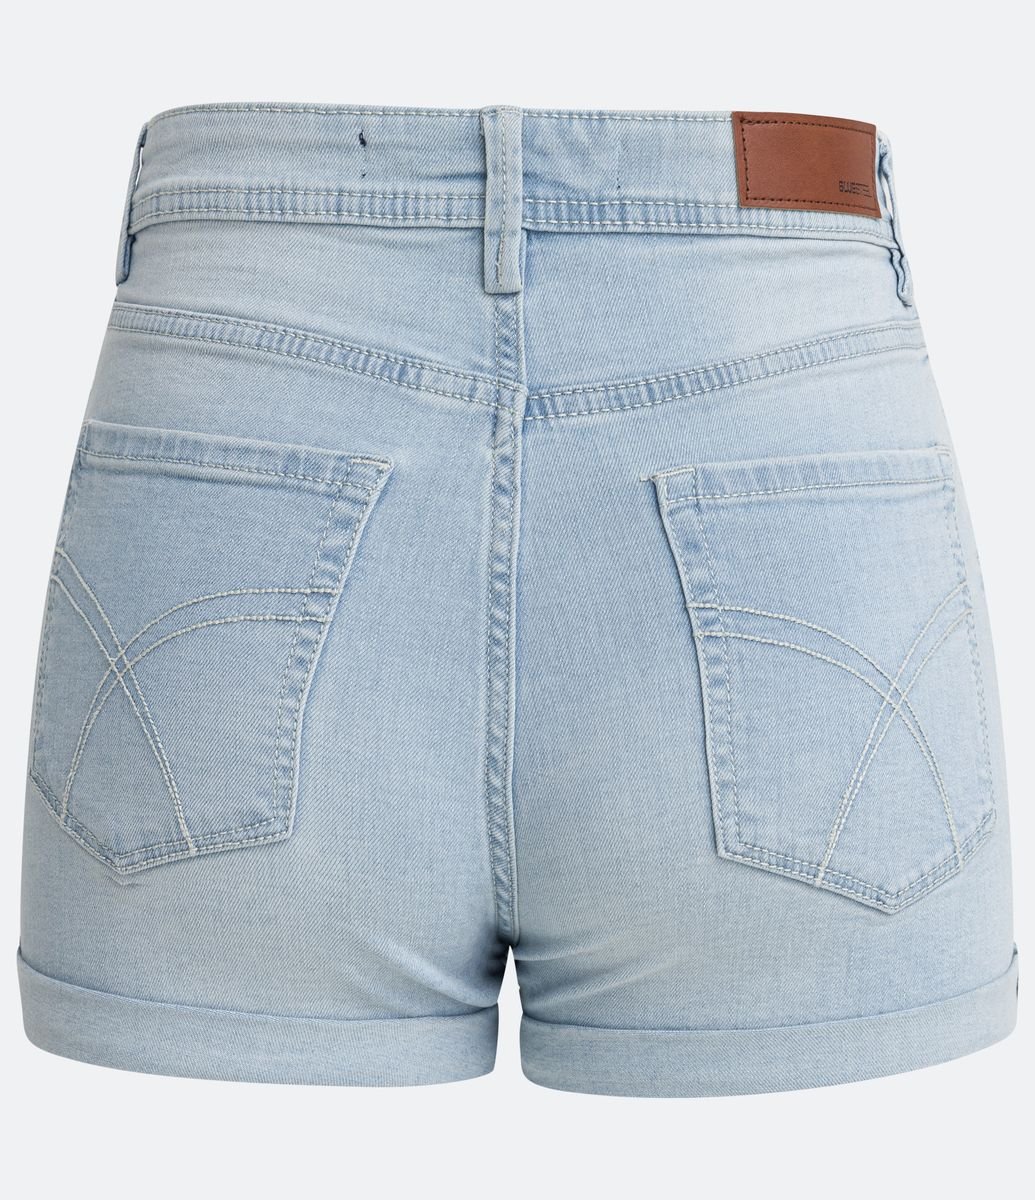 Short Hot Pants em Jeans Delavê com Barra Dobrada Azul